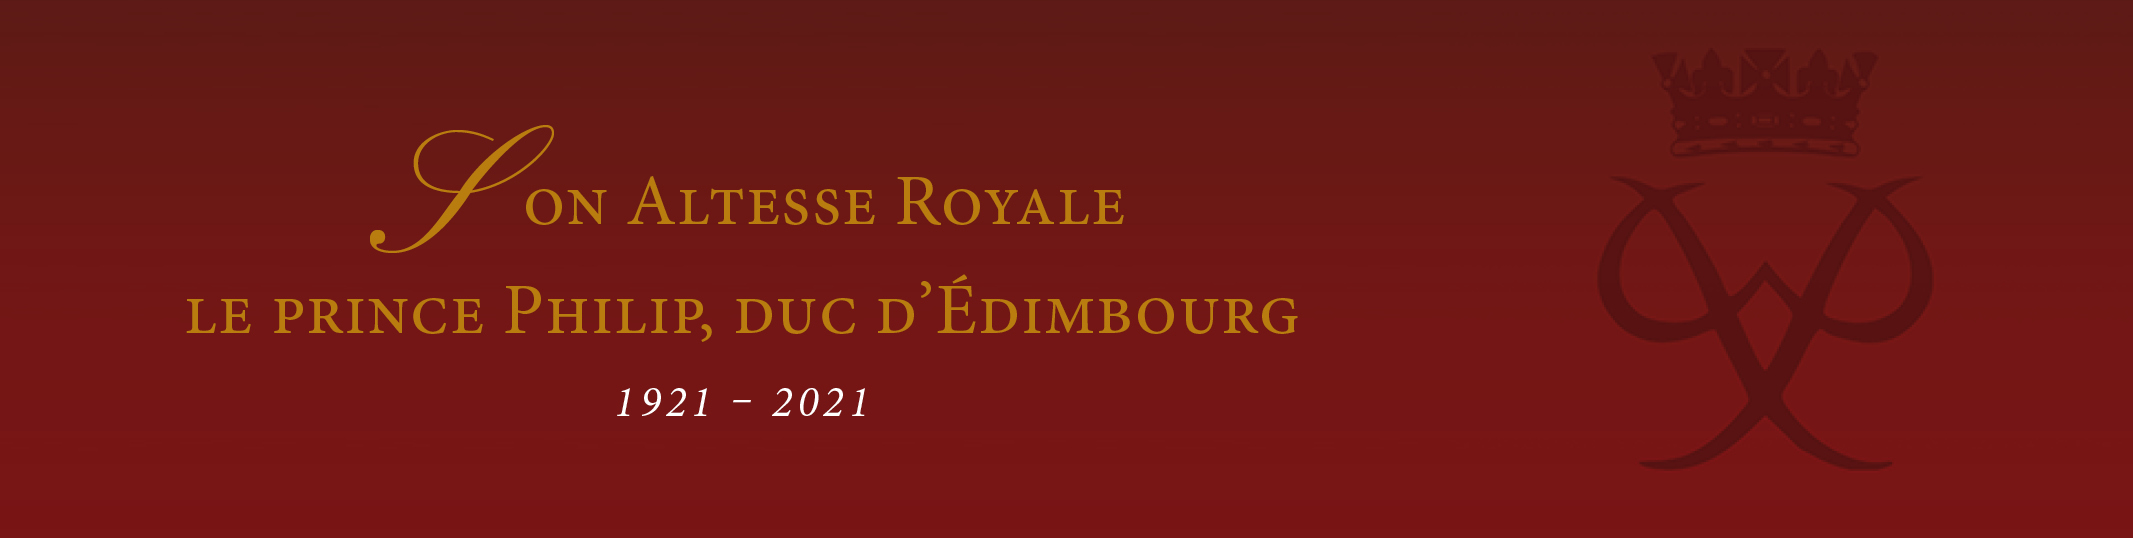 décès de Son Altesse Royale le prince Philip, duc d'Édimbourg